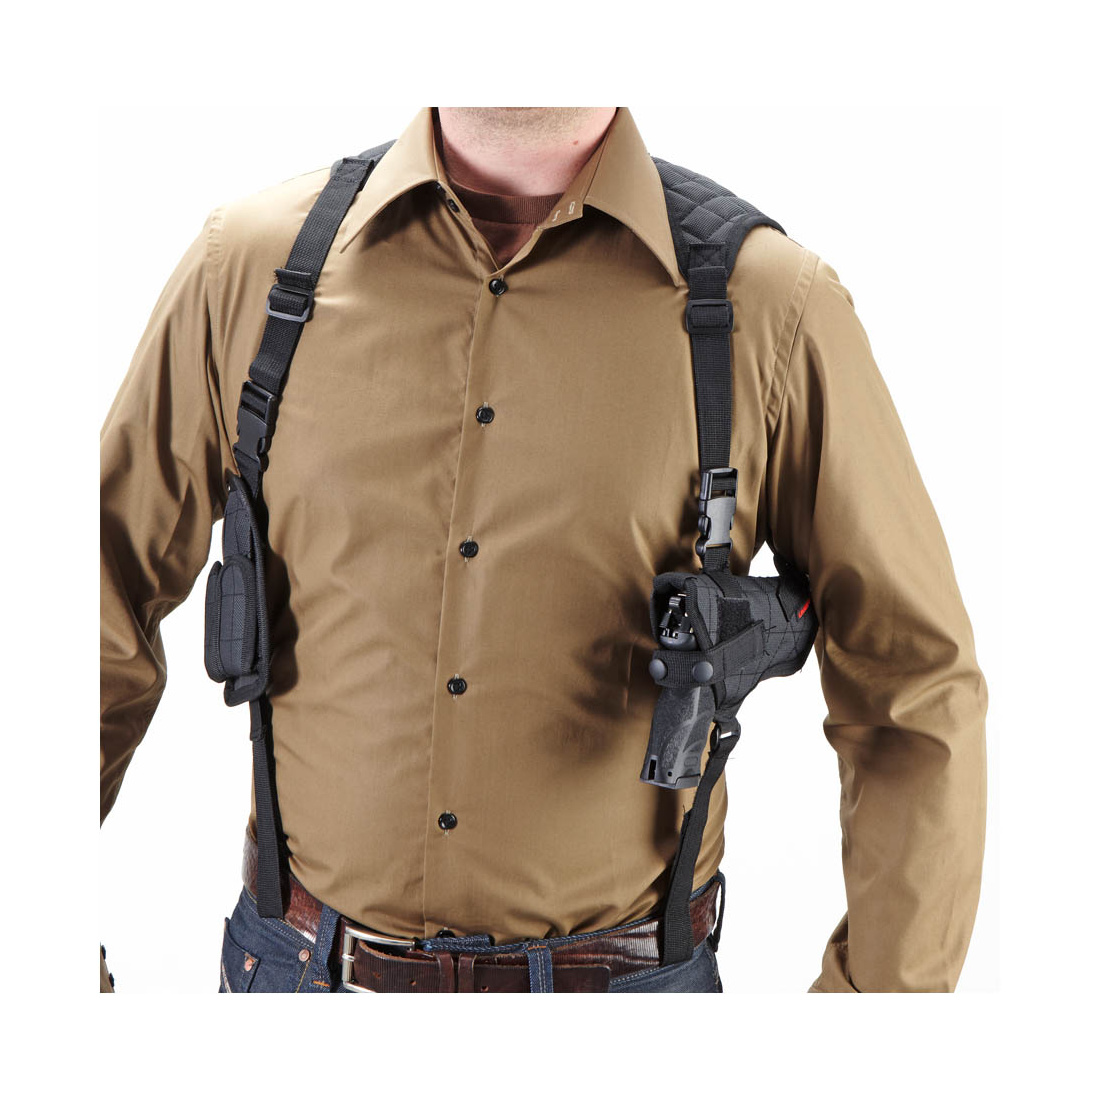 Umarex 2.5777 Shoulder Holster Nylon Universal Schulterholster für große Pistolen und Revolver